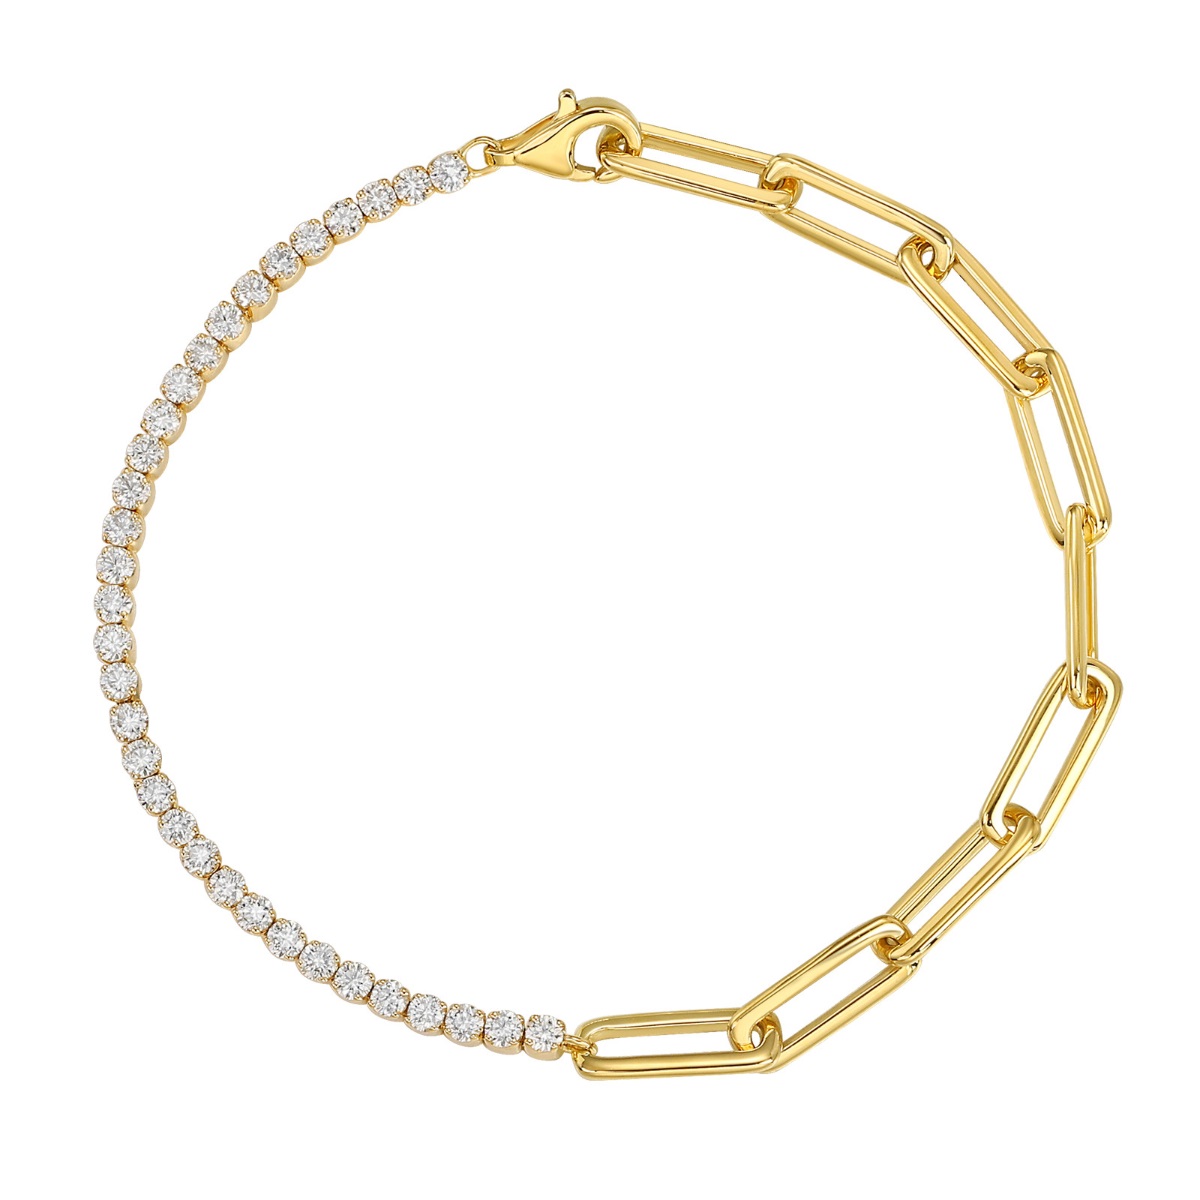 BL36682WHT – 18K Yellow Gold  Diamond Bracelet, 1.35 TCW